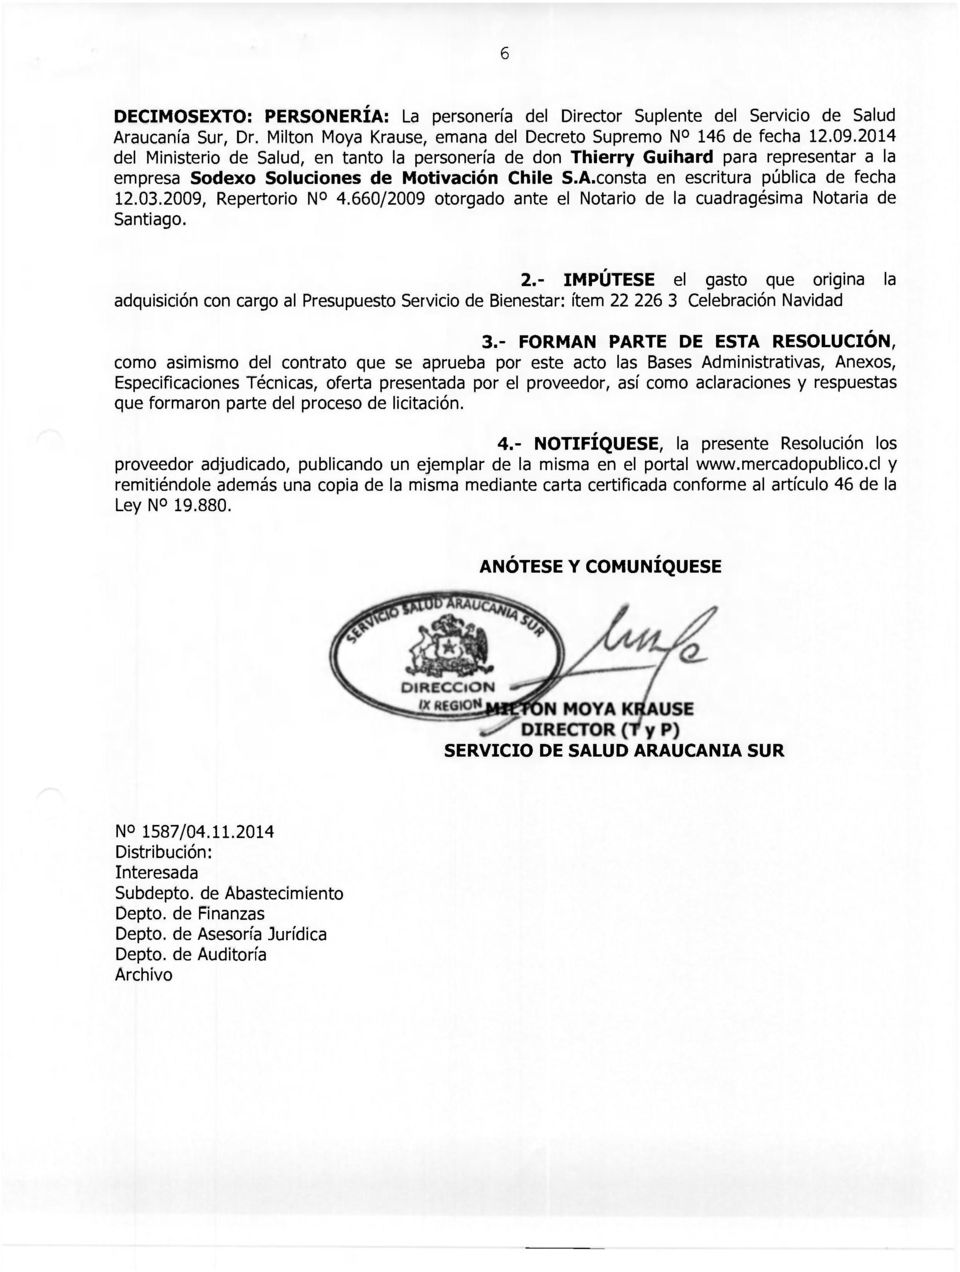 2009, Repertorio N 4.660/2009 otorgado ante el Notario de la cuadragésima Notaría de Santiago. 2.